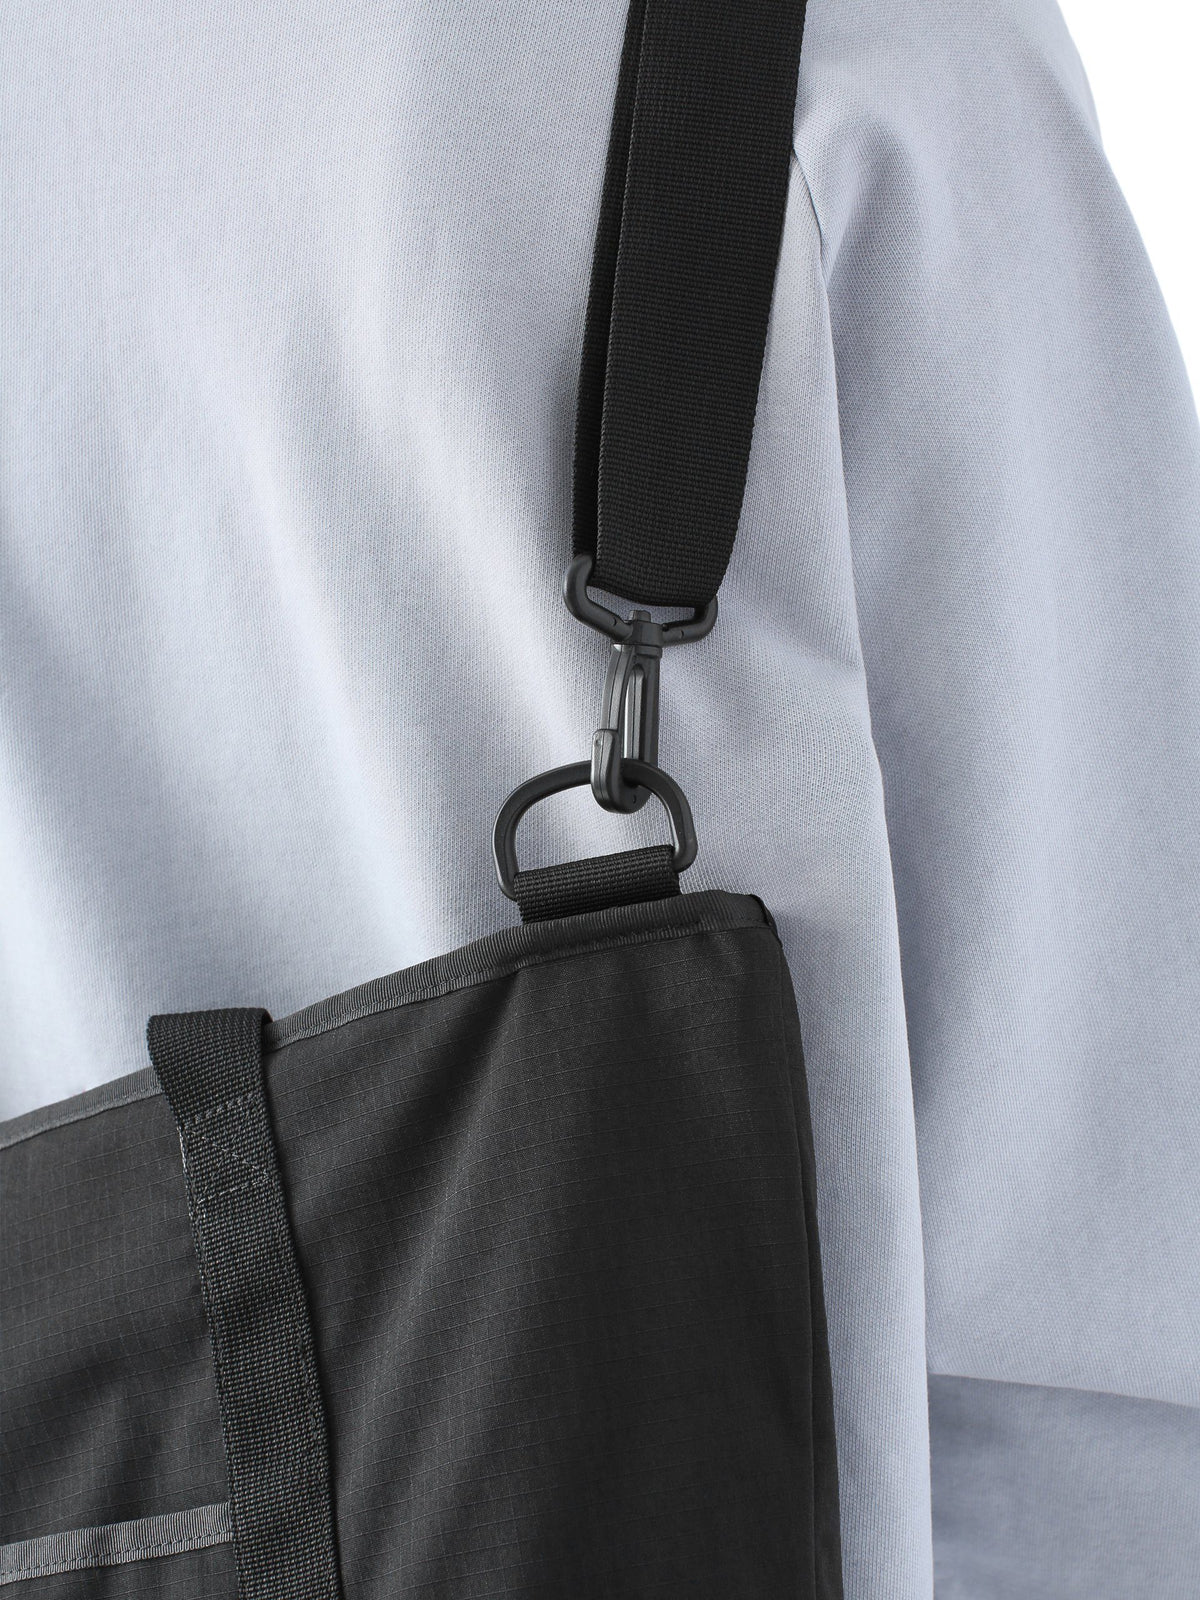 CORDURA® Zip-Top Tote Bag Bag 